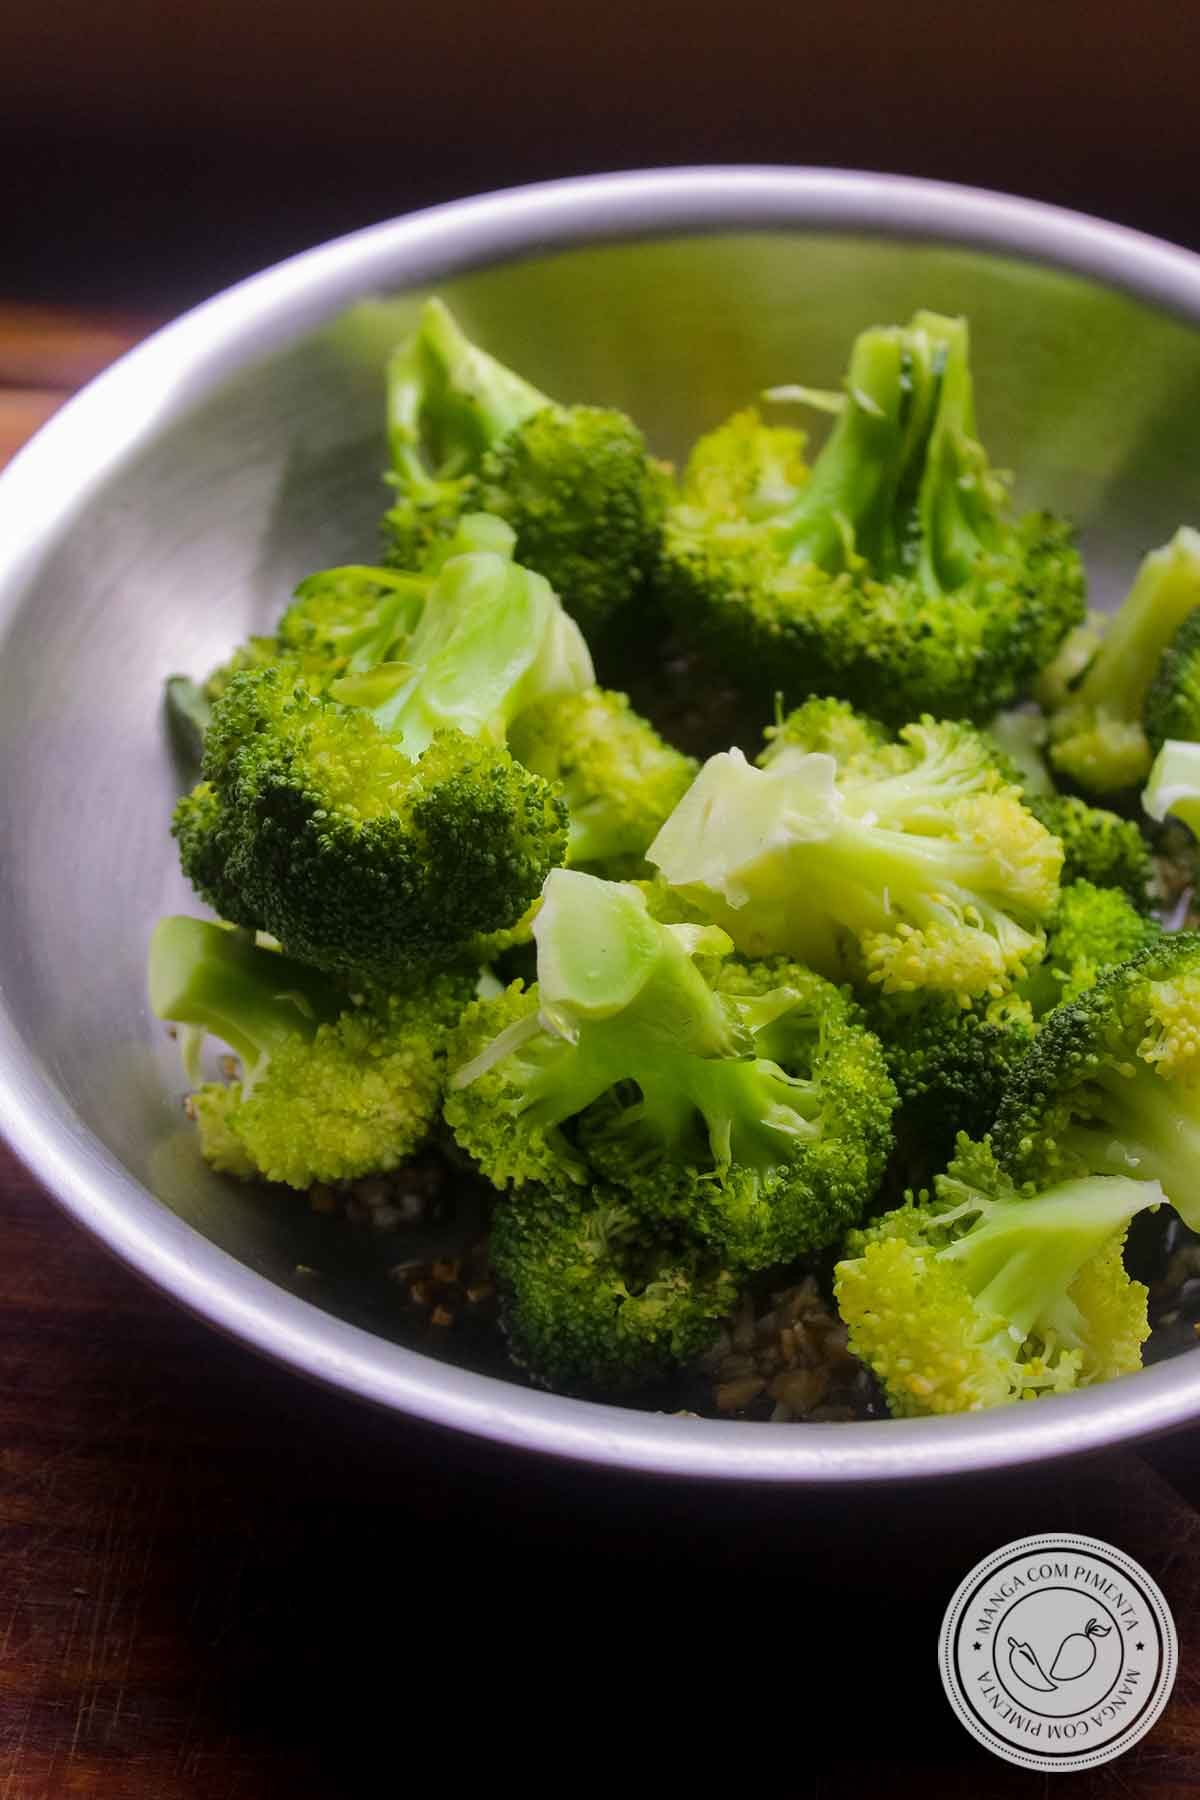 Receita de Brócolis Alho e Óleo - super simples de fazer e ótimo acompanhamento para o almoço.